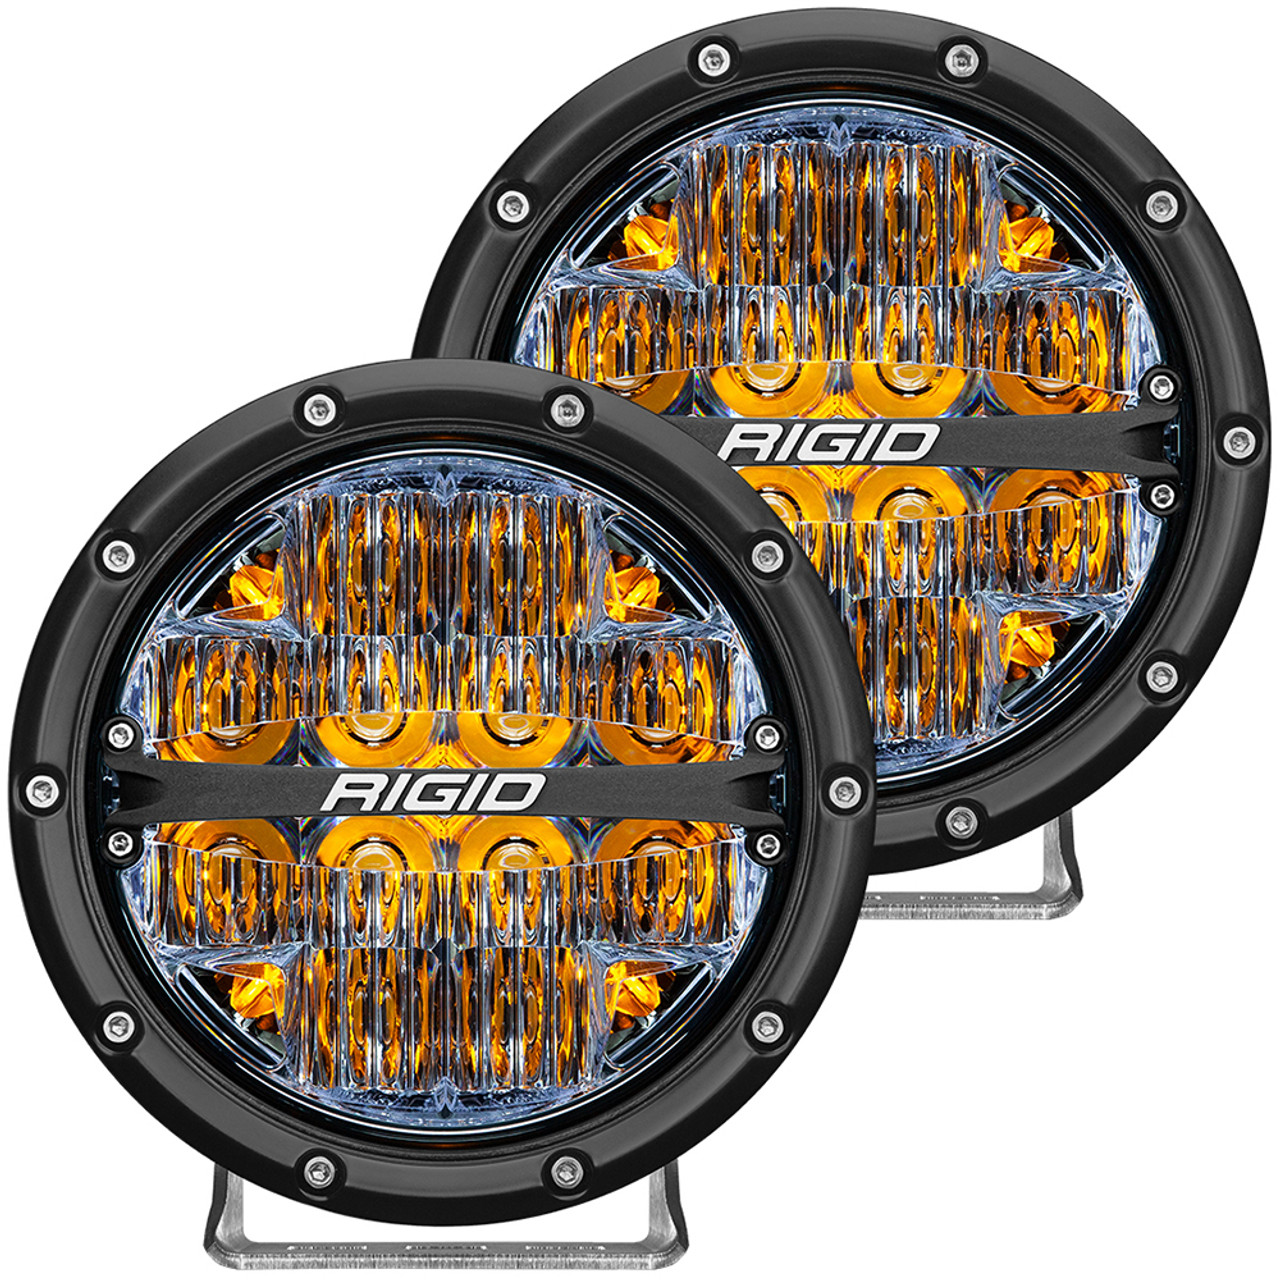 RIGID Industries 360-Serie 6 LED-Offroad-Nebelscheinwerfer-Fahrbalken mit  bernsteinfarbener Hintergrundbeleuchtung – schwarzes Gehäuse